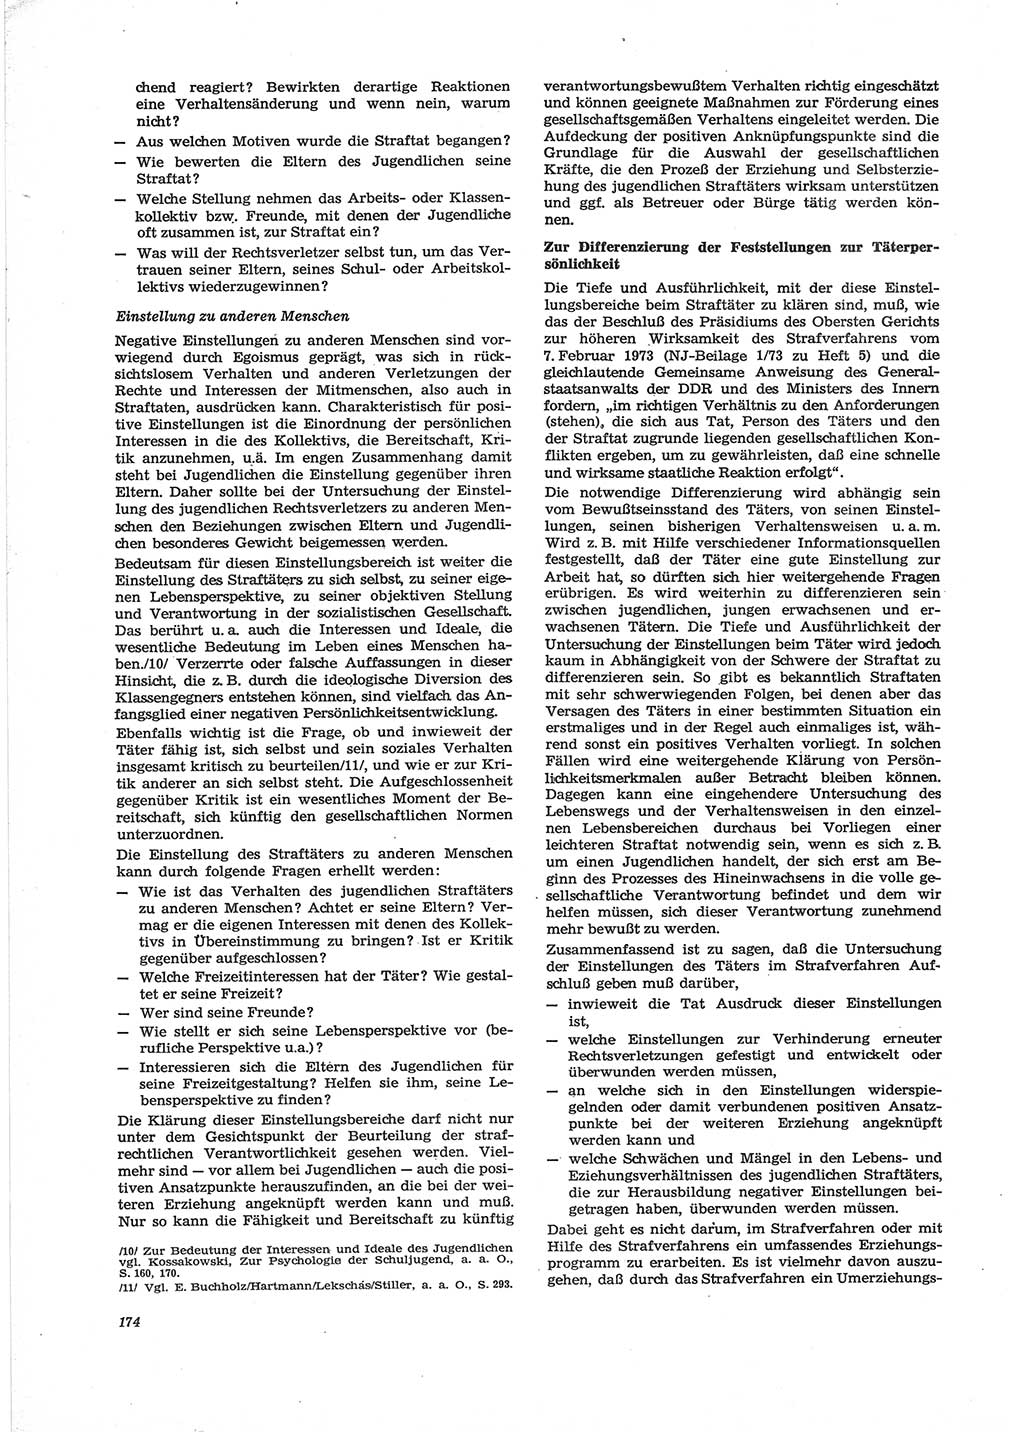 Neue Justiz (NJ), Zeitschrift für Recht und Rechtswissenschaft [Deutsche Demokratische Republik (DDR)], 28. Jahrgang 1974, Seite 174 (NJ DDR 1974, S. 174)